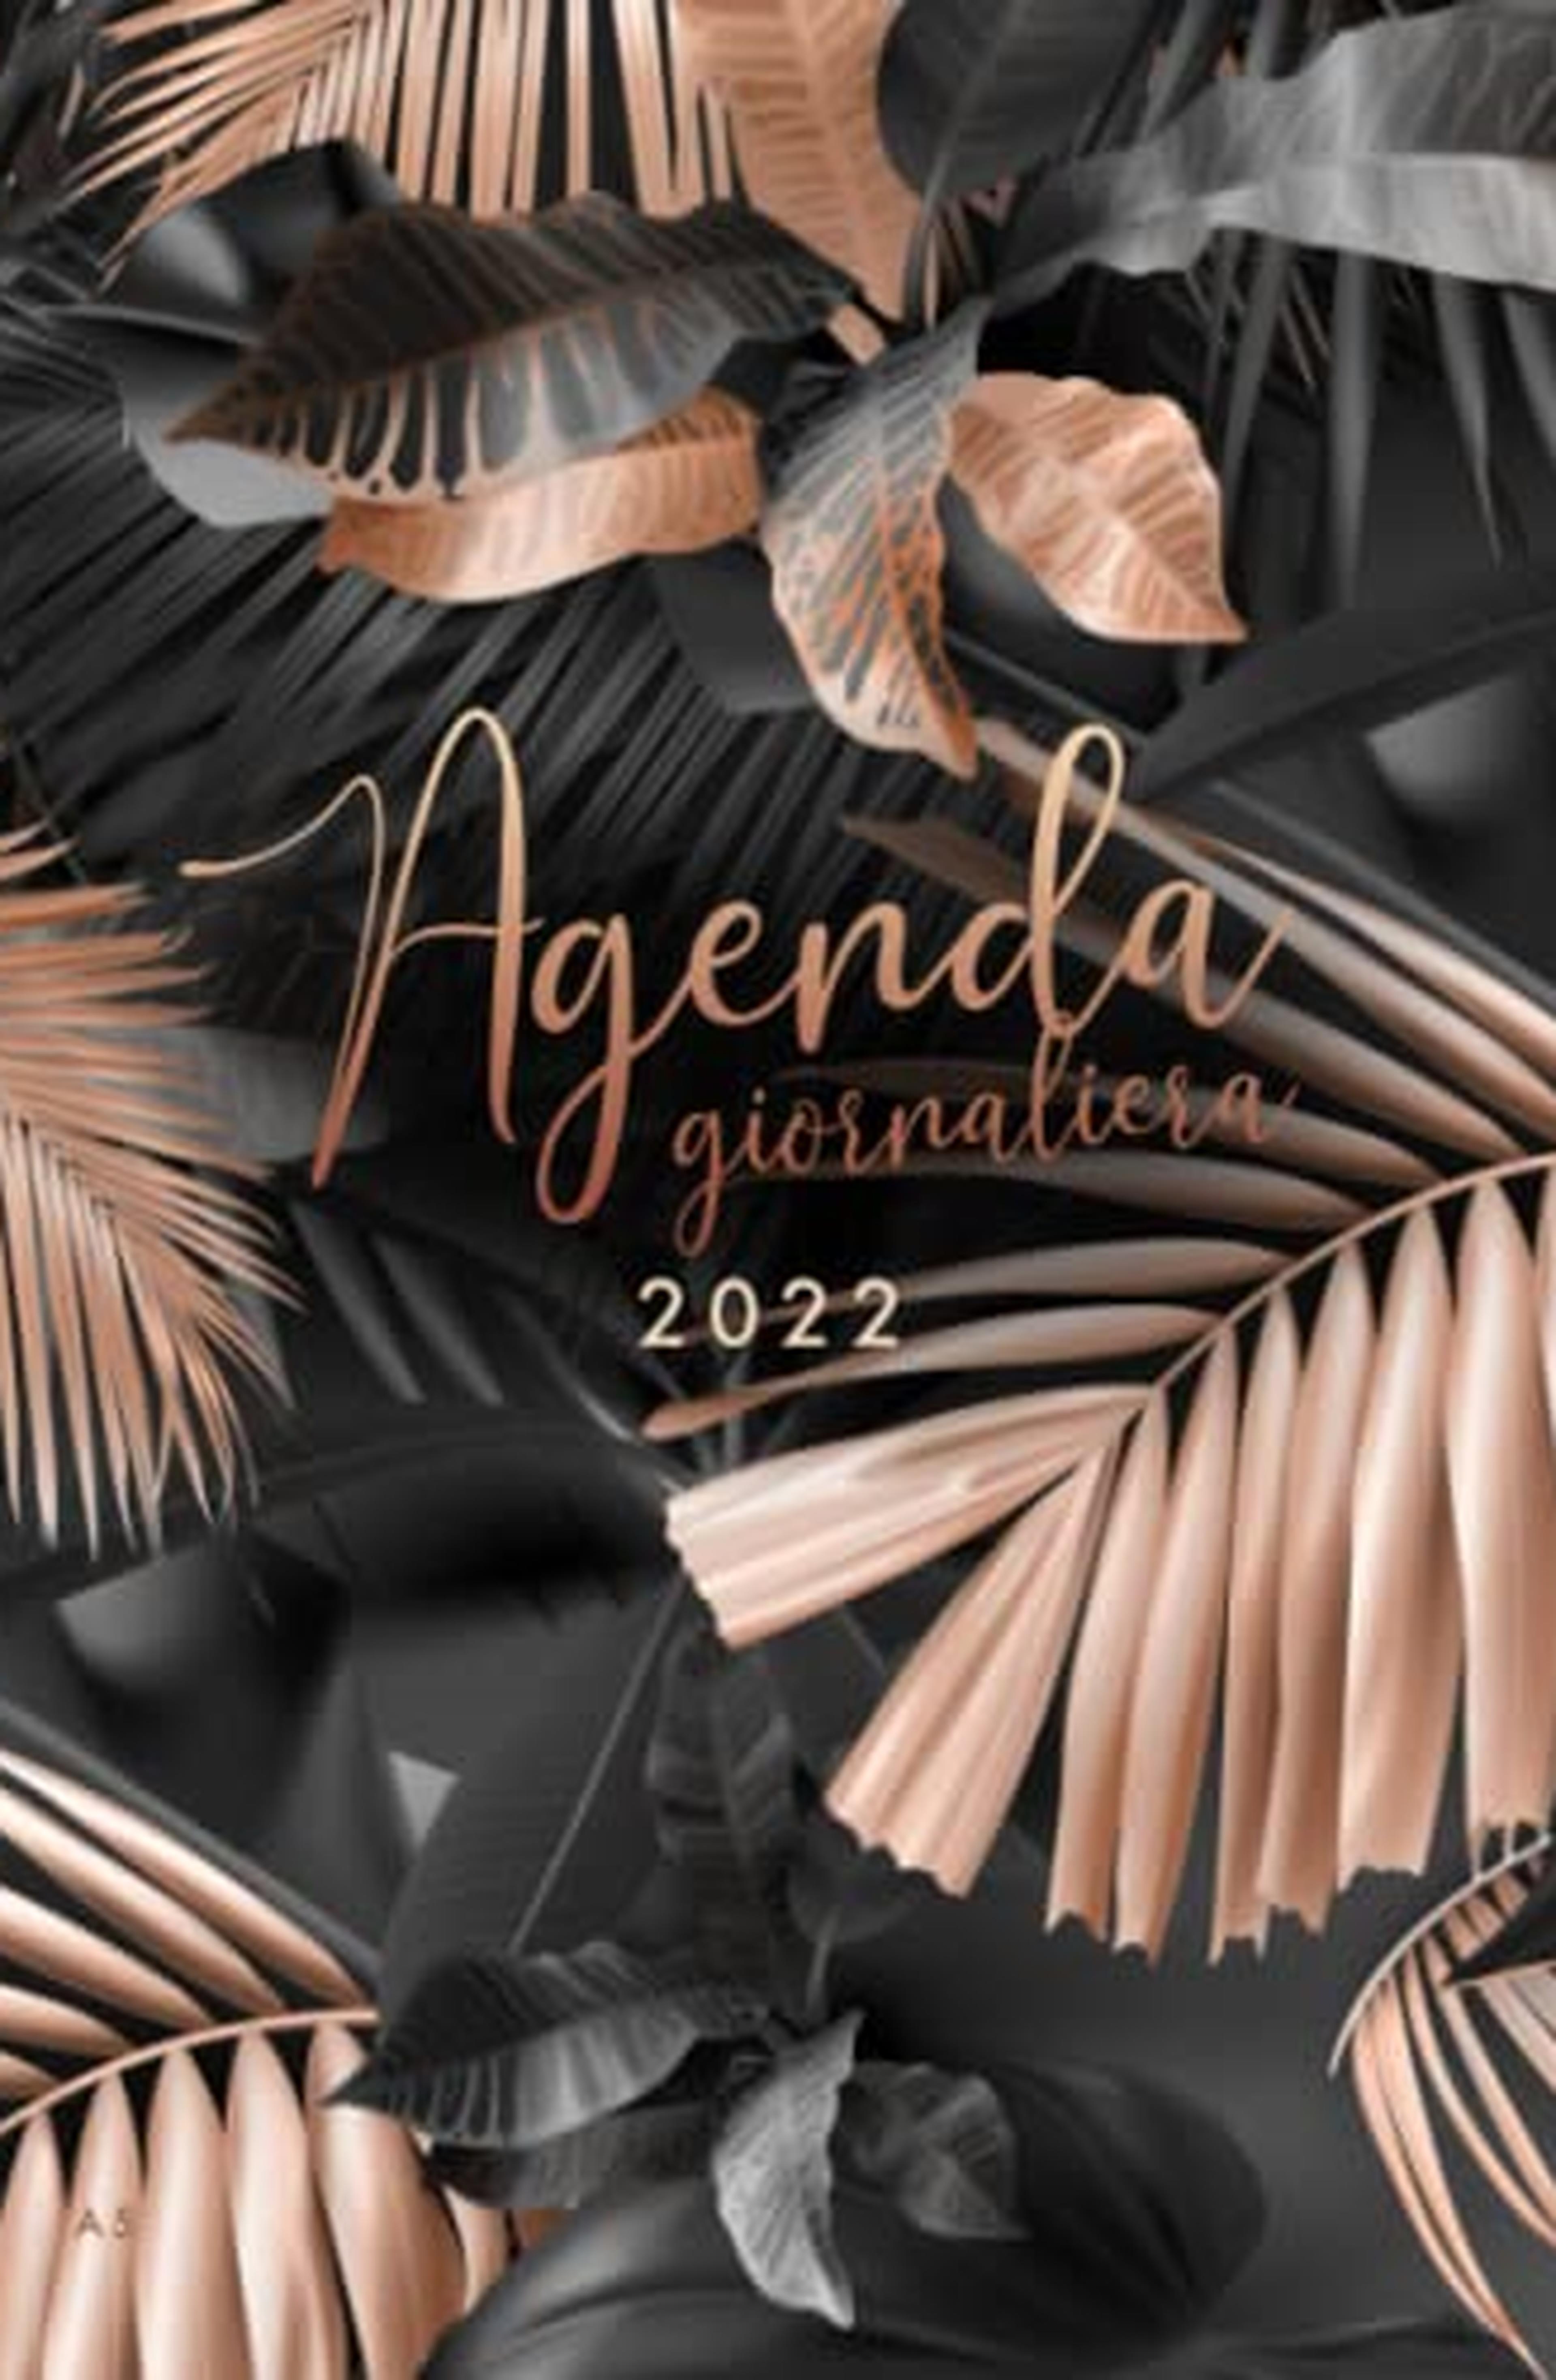 2022: Agenda 2022 Giornaliera gennaio - dicembre 2022, 12 mesi, formato 15x21, foglie di palma, colore nero